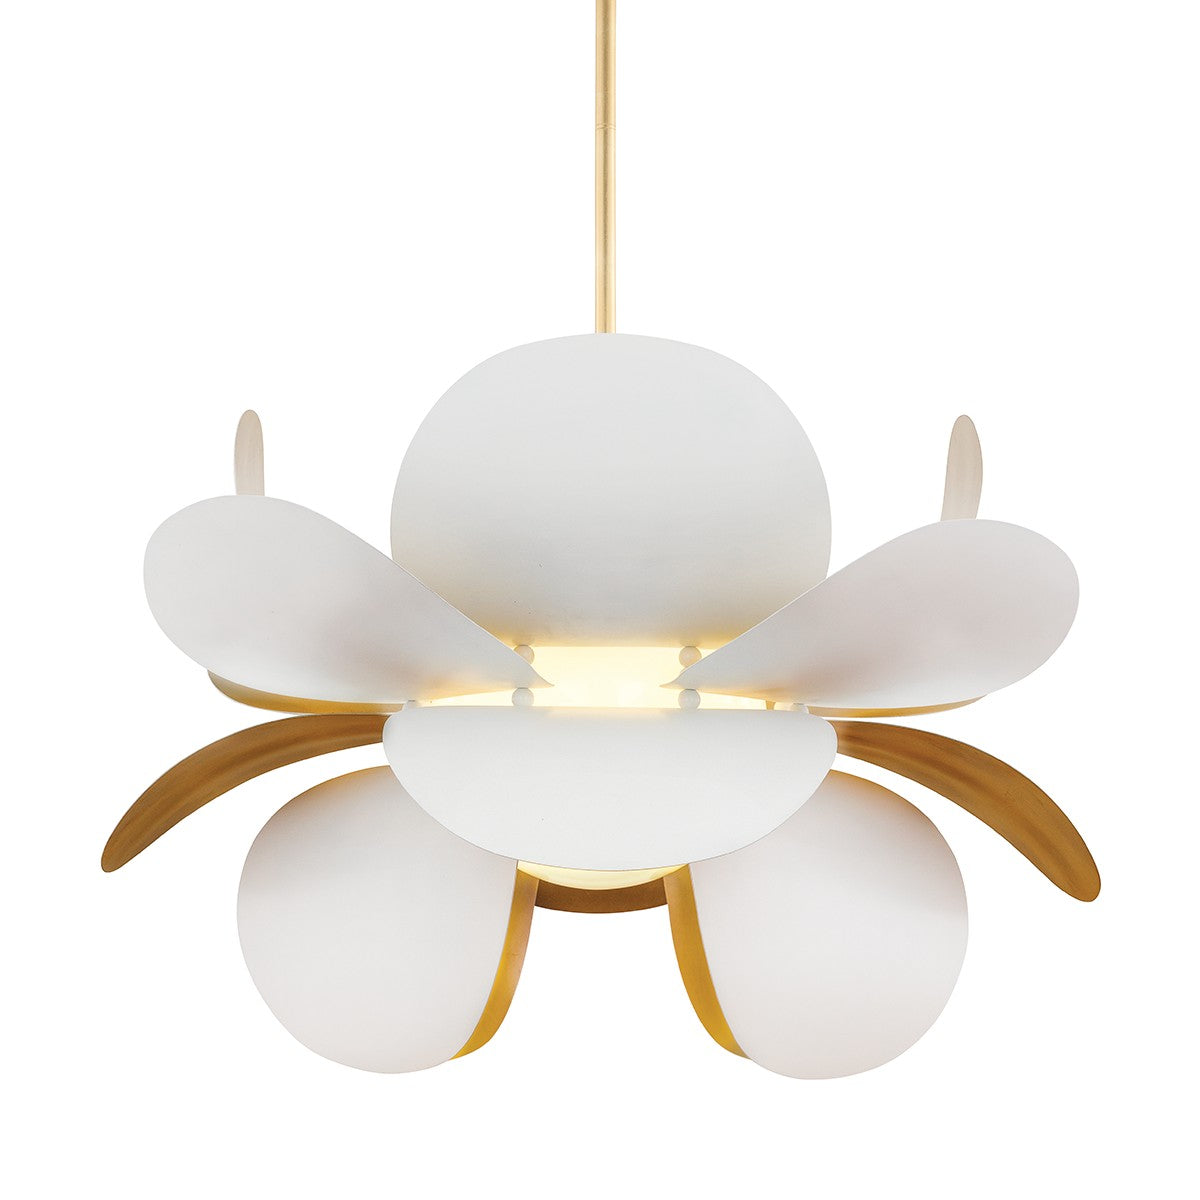 Corbett Lighting - One Light Chandelier - Ginger - Gold Leaf/White- Union Lighting Luminaires Decor